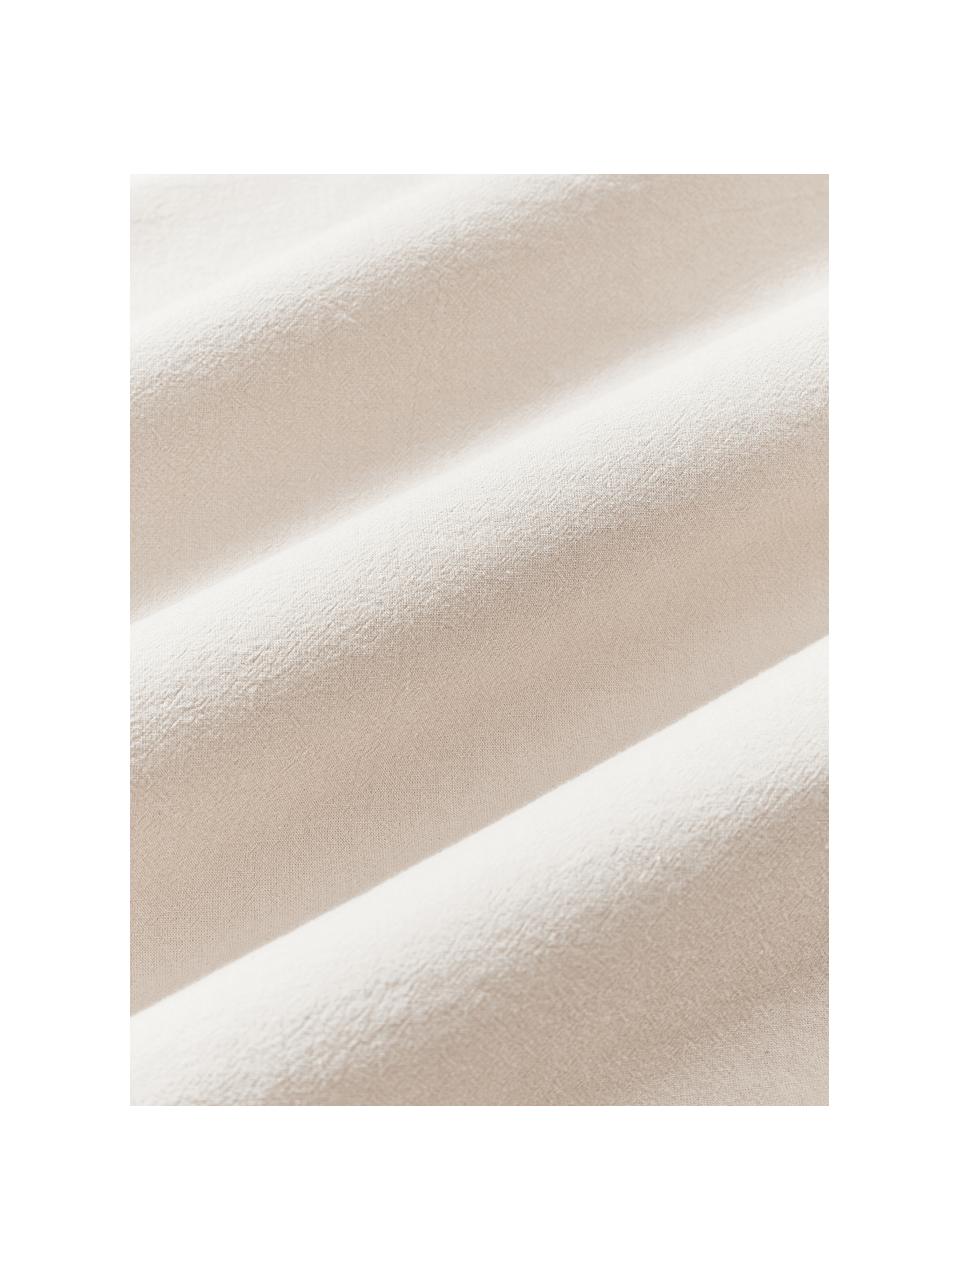 Drap plat en coton Abra, 100 % coton
Densité 165 fils par pouce carré, qualité standard

La literie en coton procure une agréable sensation de douceur sur la peau, absorbe bien l'humidité et convient aux personnes allergiques.

La teinture en pièce rend le tissu doux et souple au toucher, pour un linge de lit absolument extraordinaire.

Le matériau est certifié STANDARD 100 OEKO-TEX®, 10817CIT, CITEVE, Beige, larg. 240 x long. 280 cm